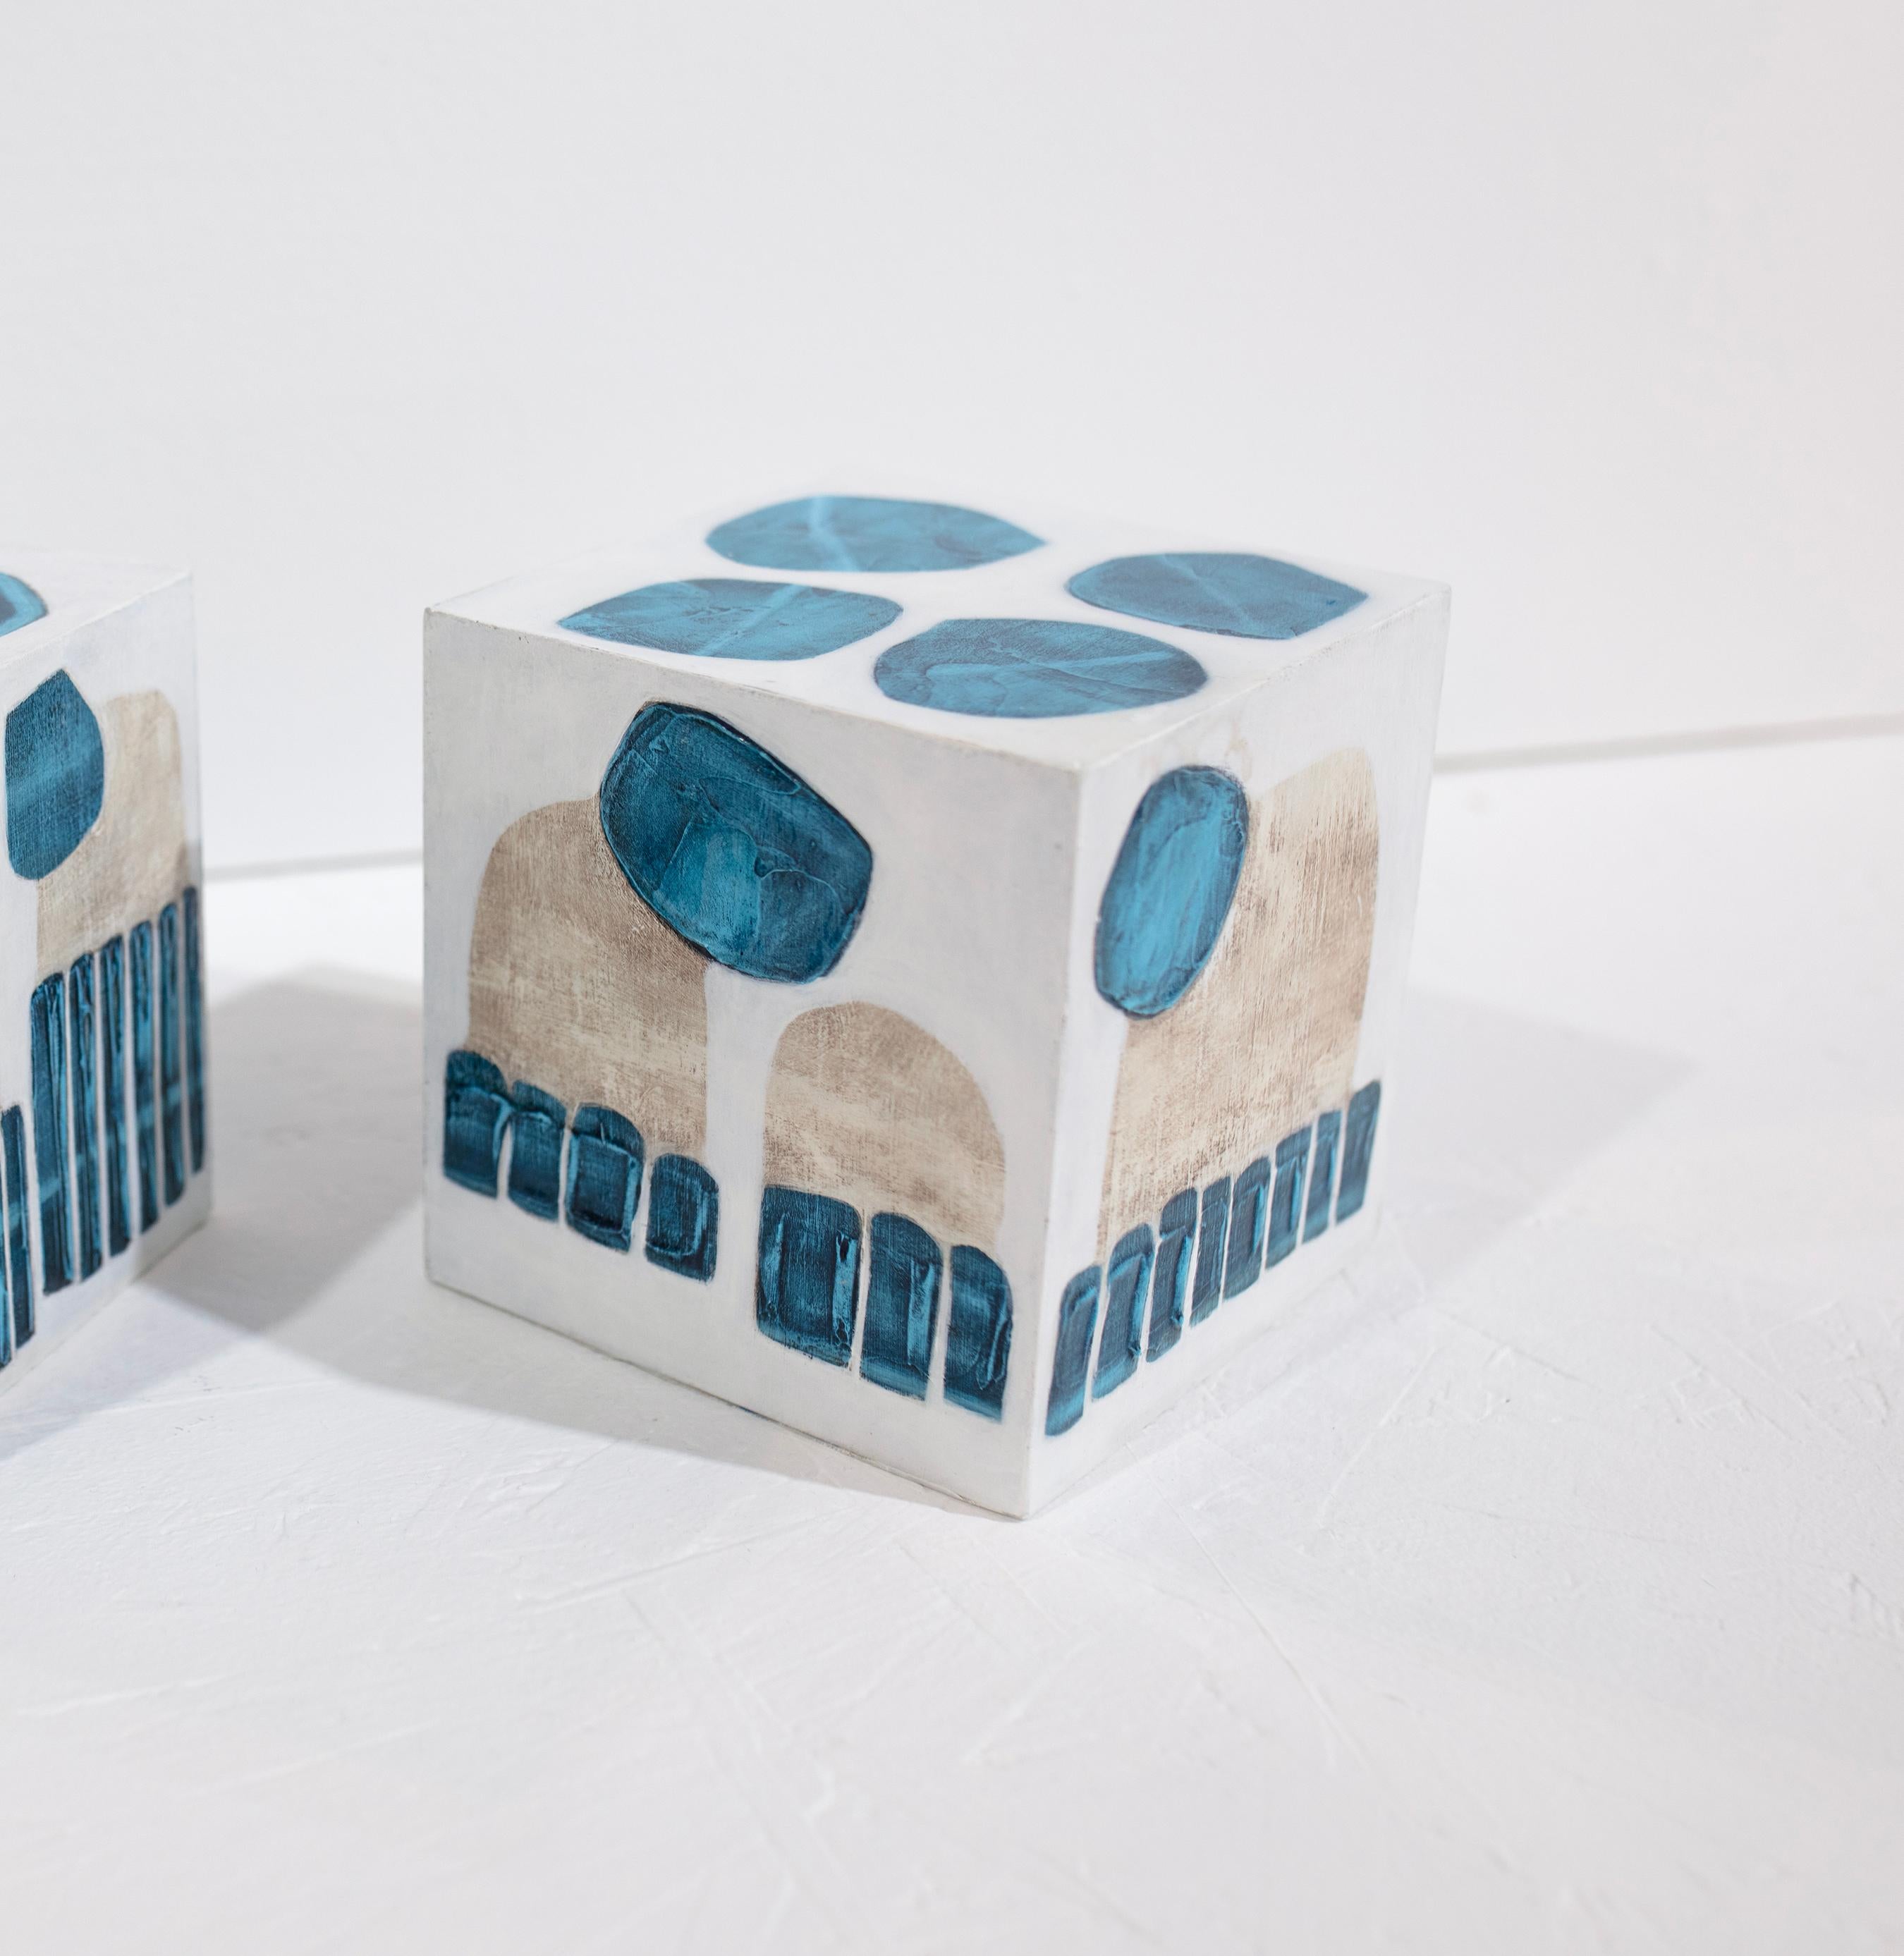 Ce cube sculptural de 5 pouces peint à la main par Sofie Swann est réalisé avec de la peinture acrylique et du gesso sur bois. Il présente une palette côtière de blanc, de bleu et de beige sable avec des formes organiques superposées sur toutes les